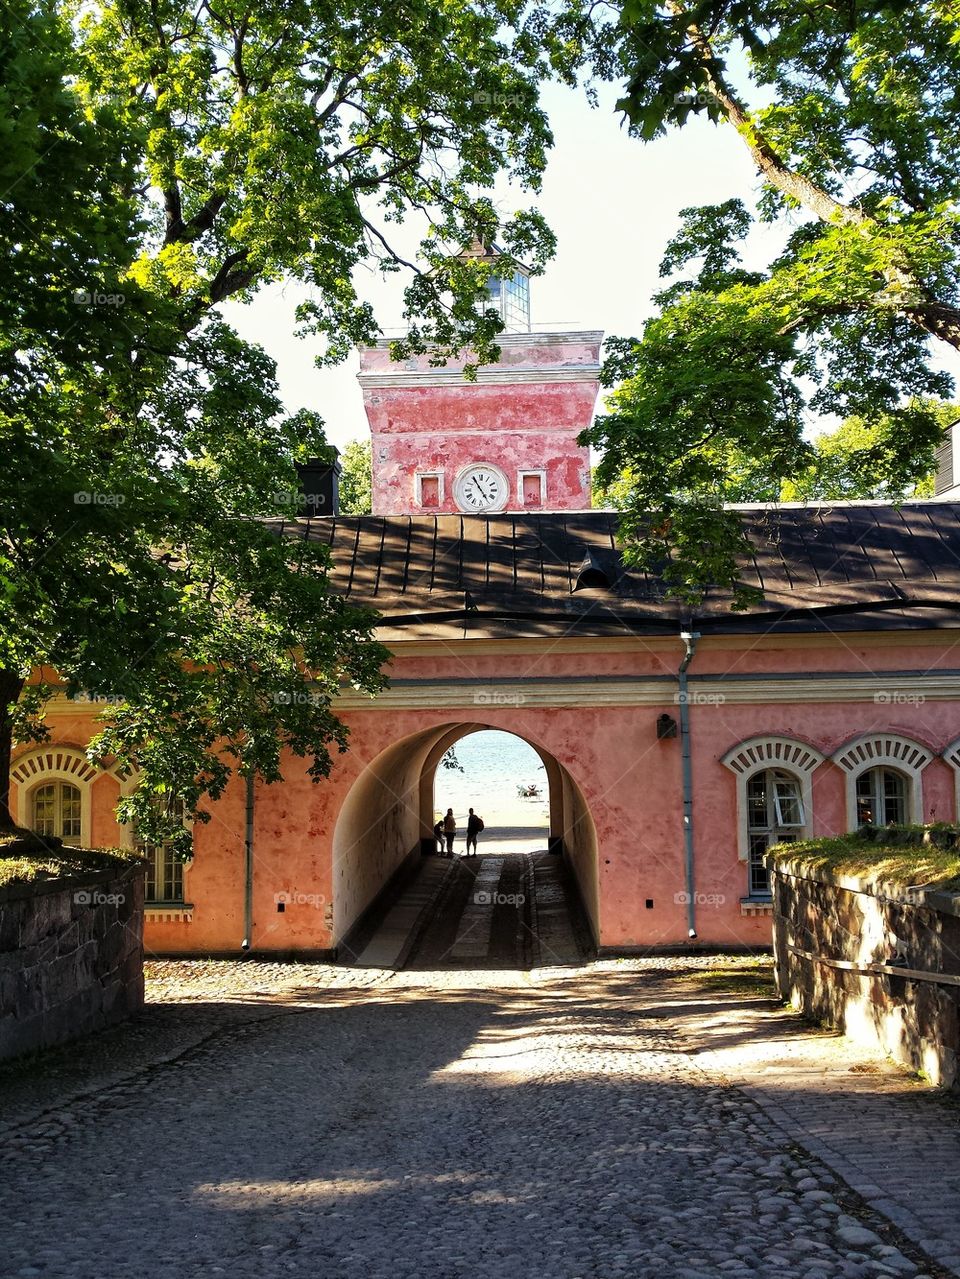 Suomenlinna fortress island